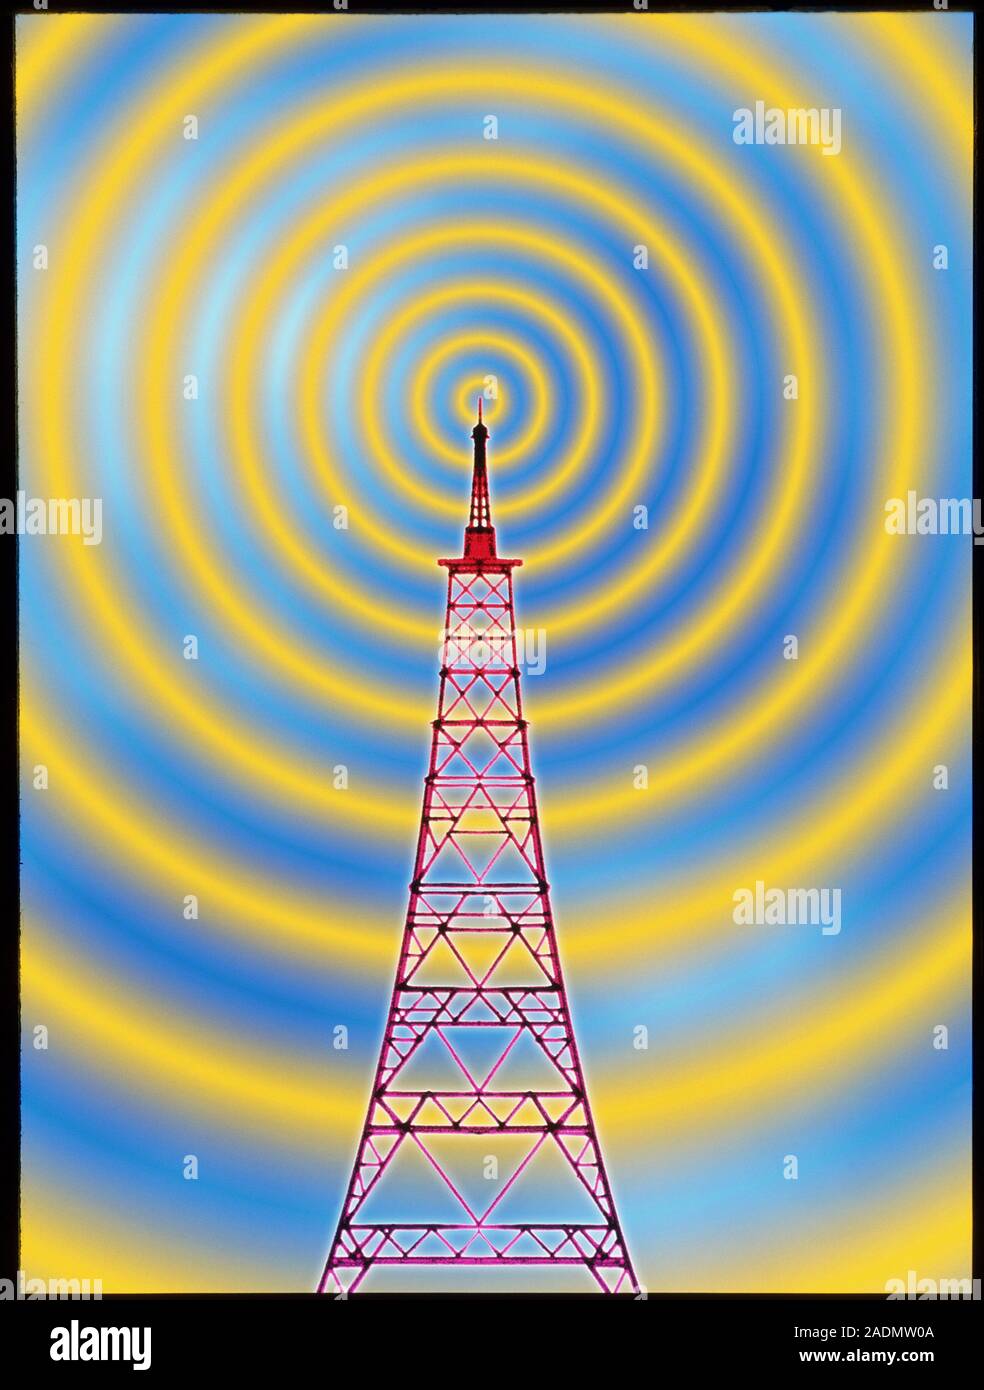 Transmission radio. Illustration graphique illustrant les ondes radio se  propagent d'une grande antenne. Le type de transmetteur vu ici, c'est tr  Photo Stock - Alamy